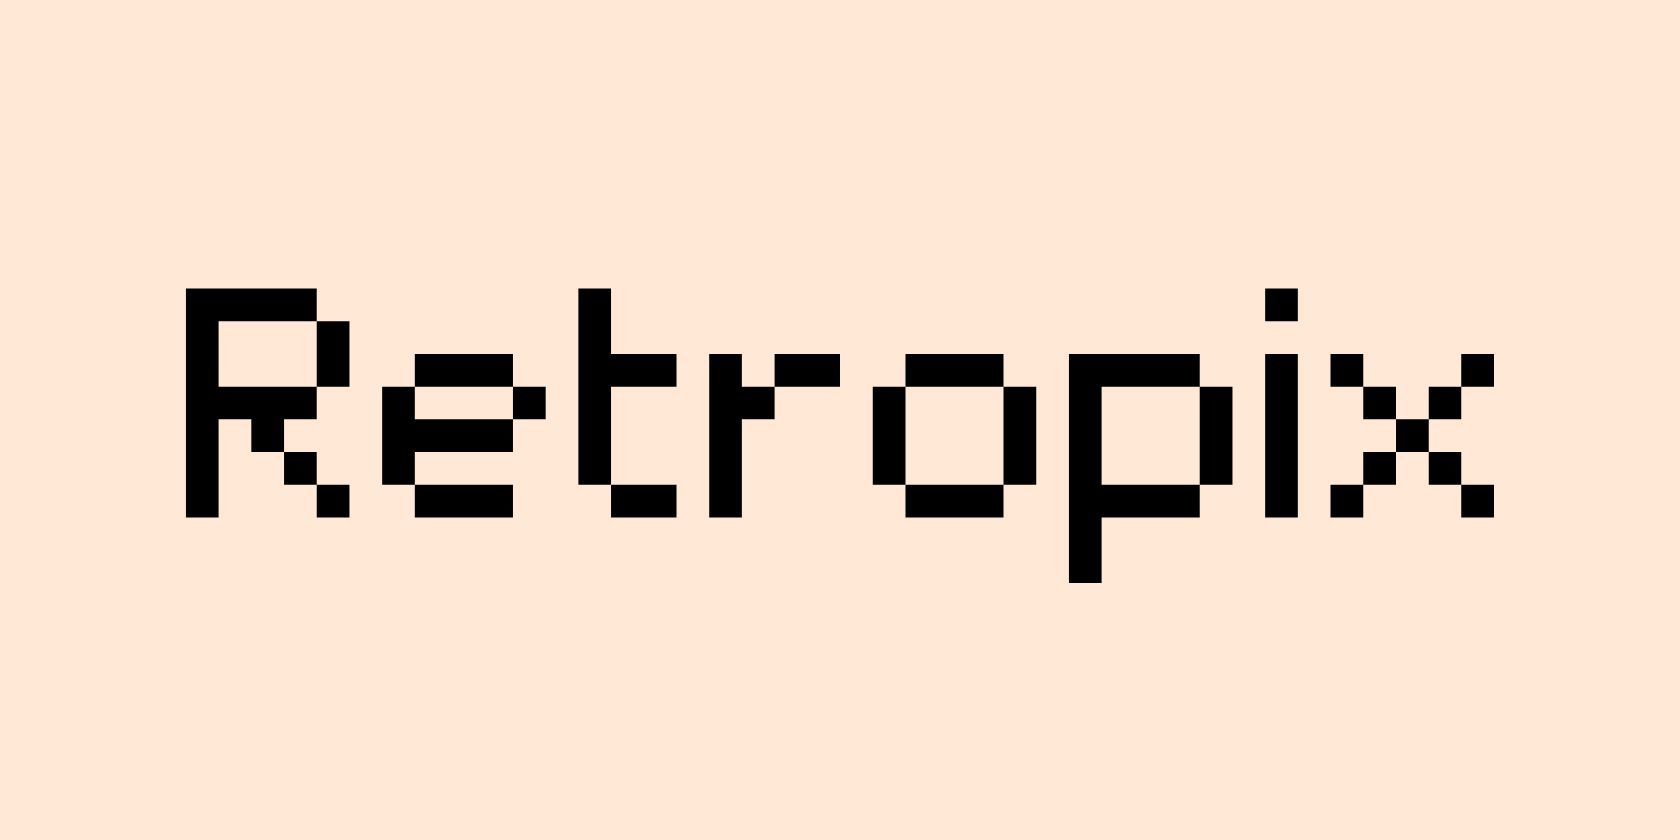  Canva font example Retropix